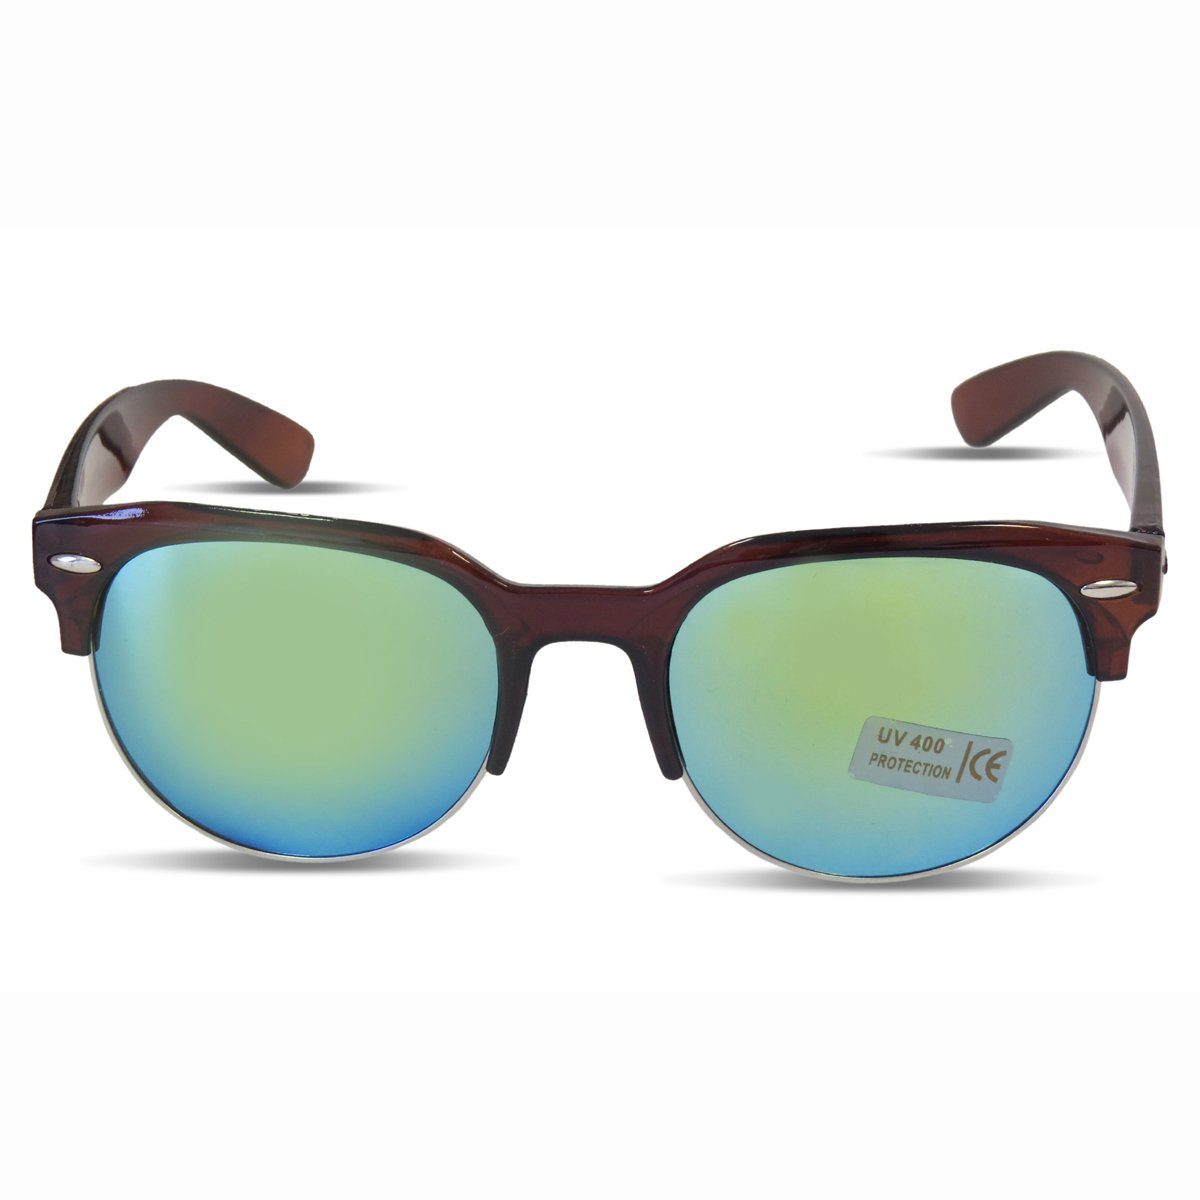 Sonia Originelli Sonnenbrille Sonnenbrille Modern Verspiegelt Klassisch Sommer Onesize braun-gruen